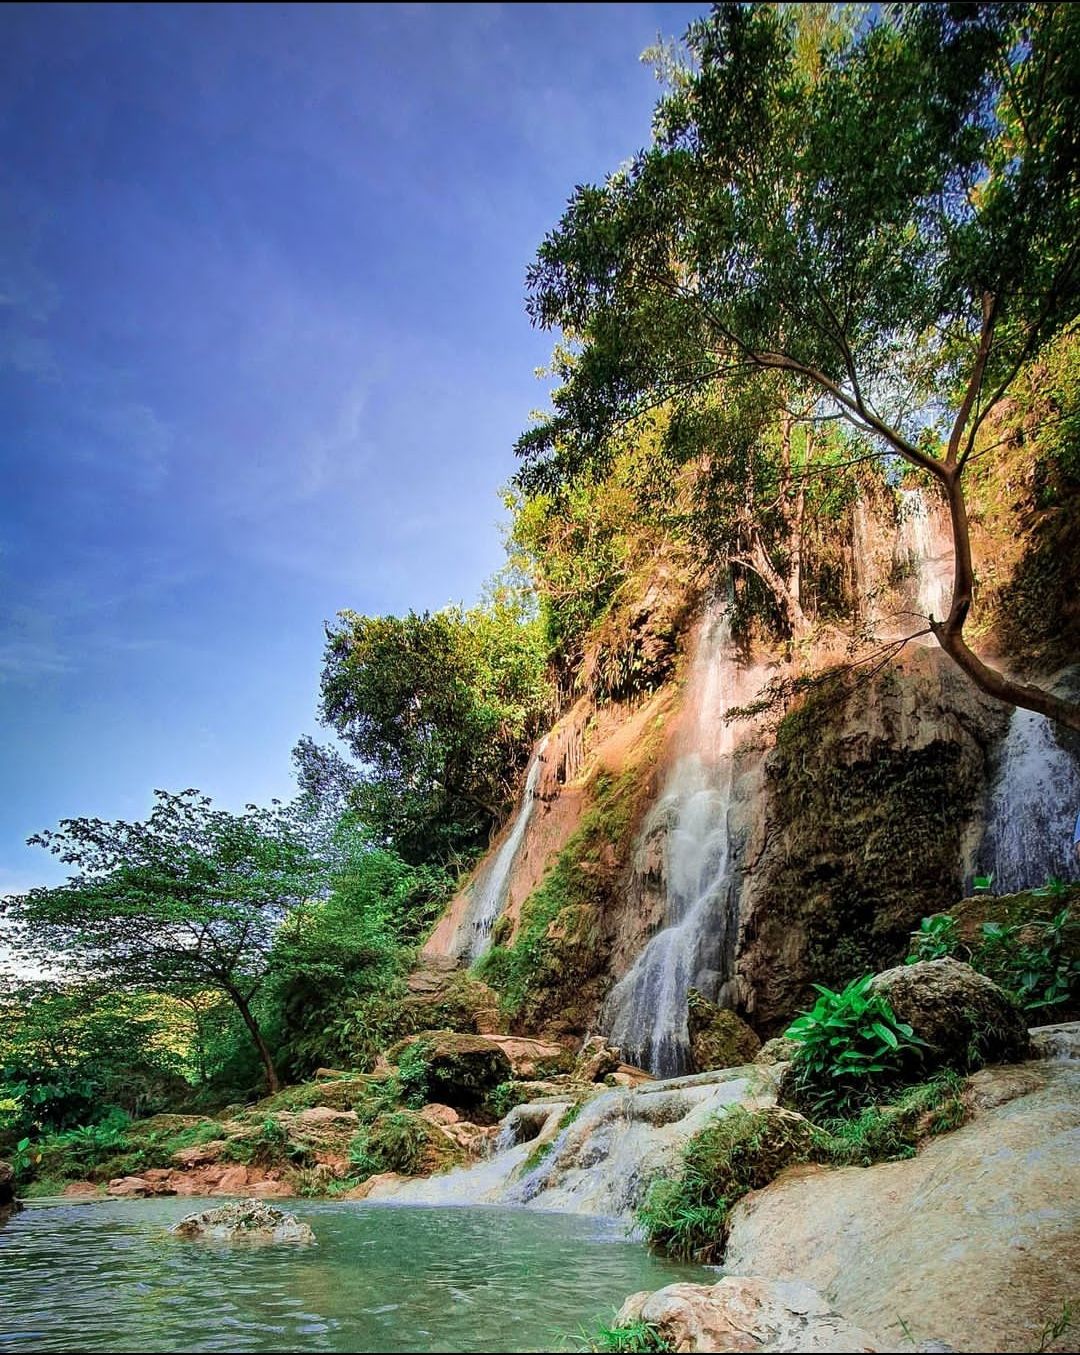 Tempat wisata Air Terjun Sri Gethuk miliki aliran air yang bersih dan melewati bebatuan yang tersusun indah